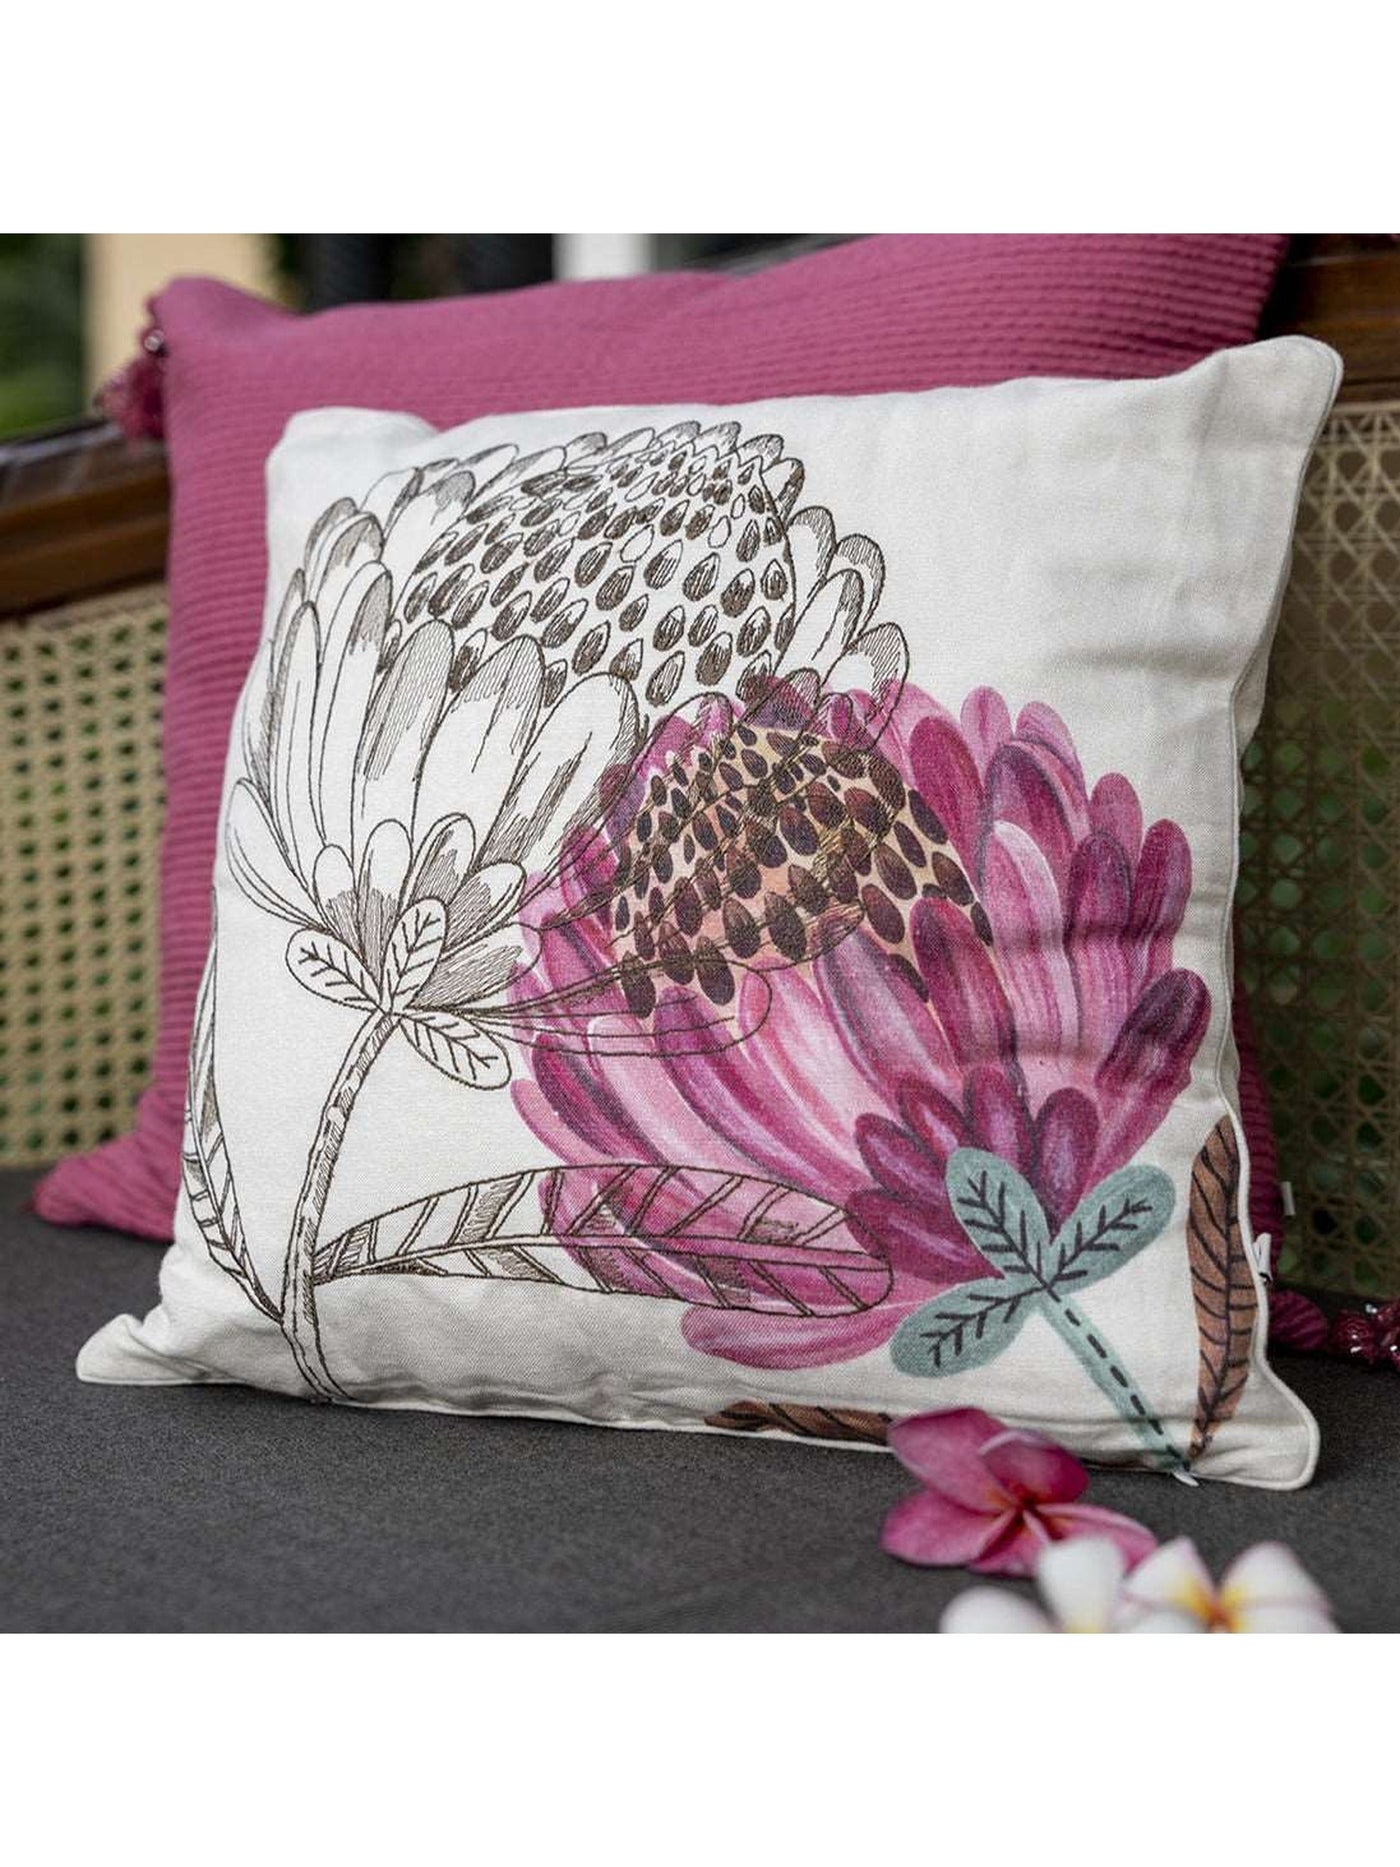 Cushion Cover - Floret Floral